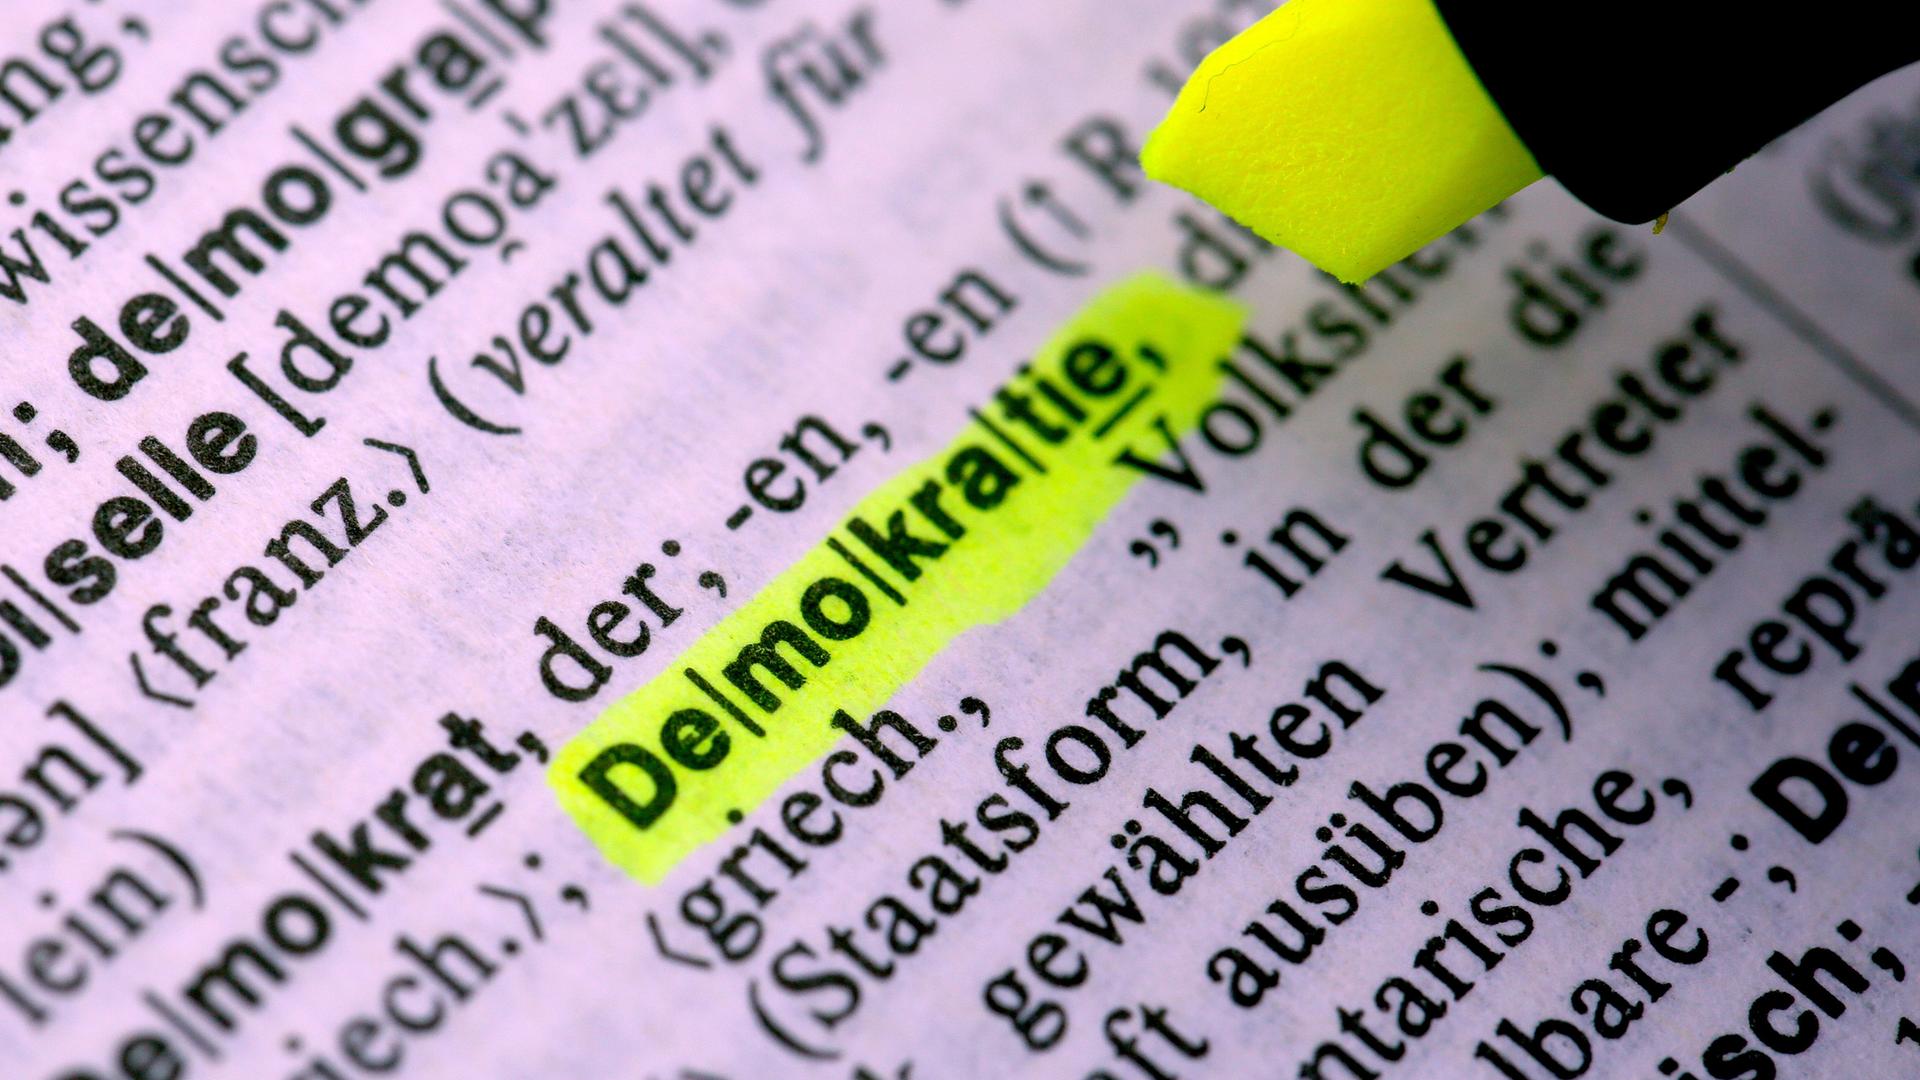 Das Wort "Demokratie" wird im Duden mit gelbem Stift markiert.